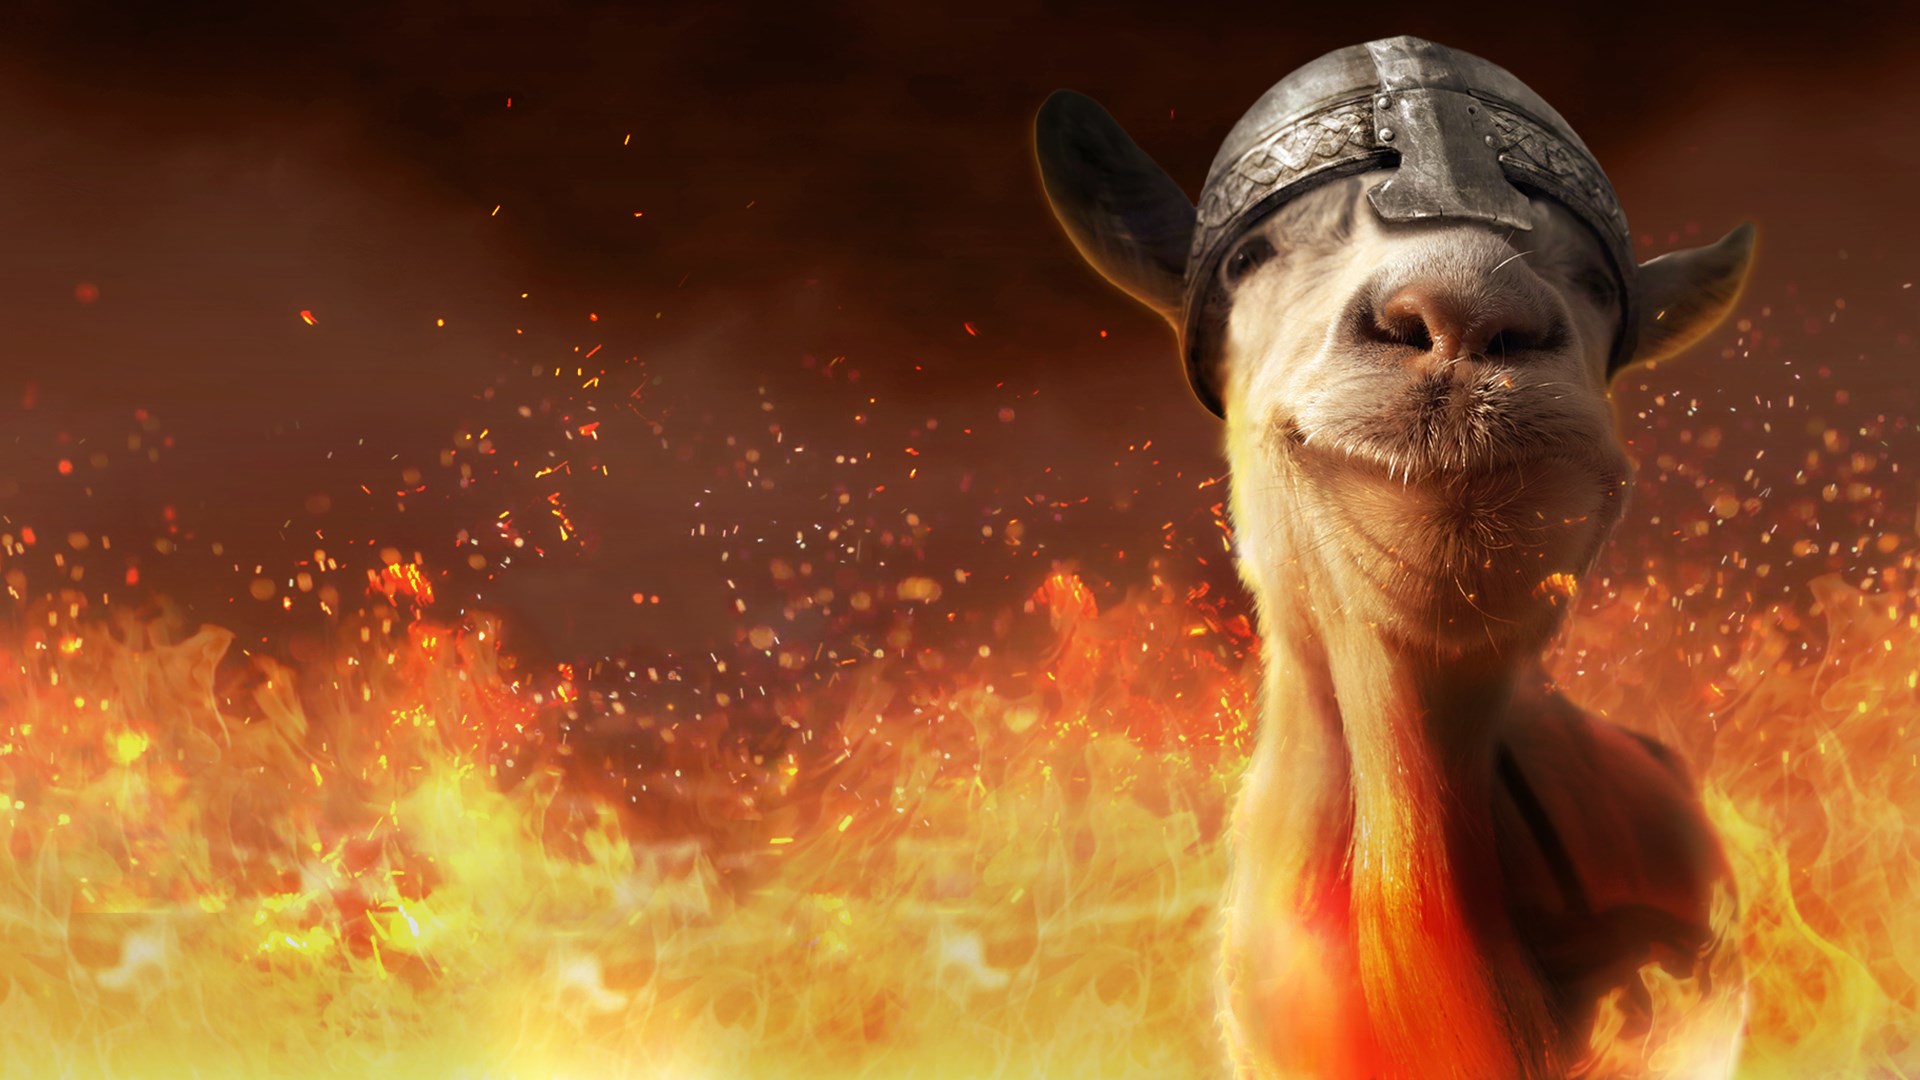 Goat simulator free download for mac